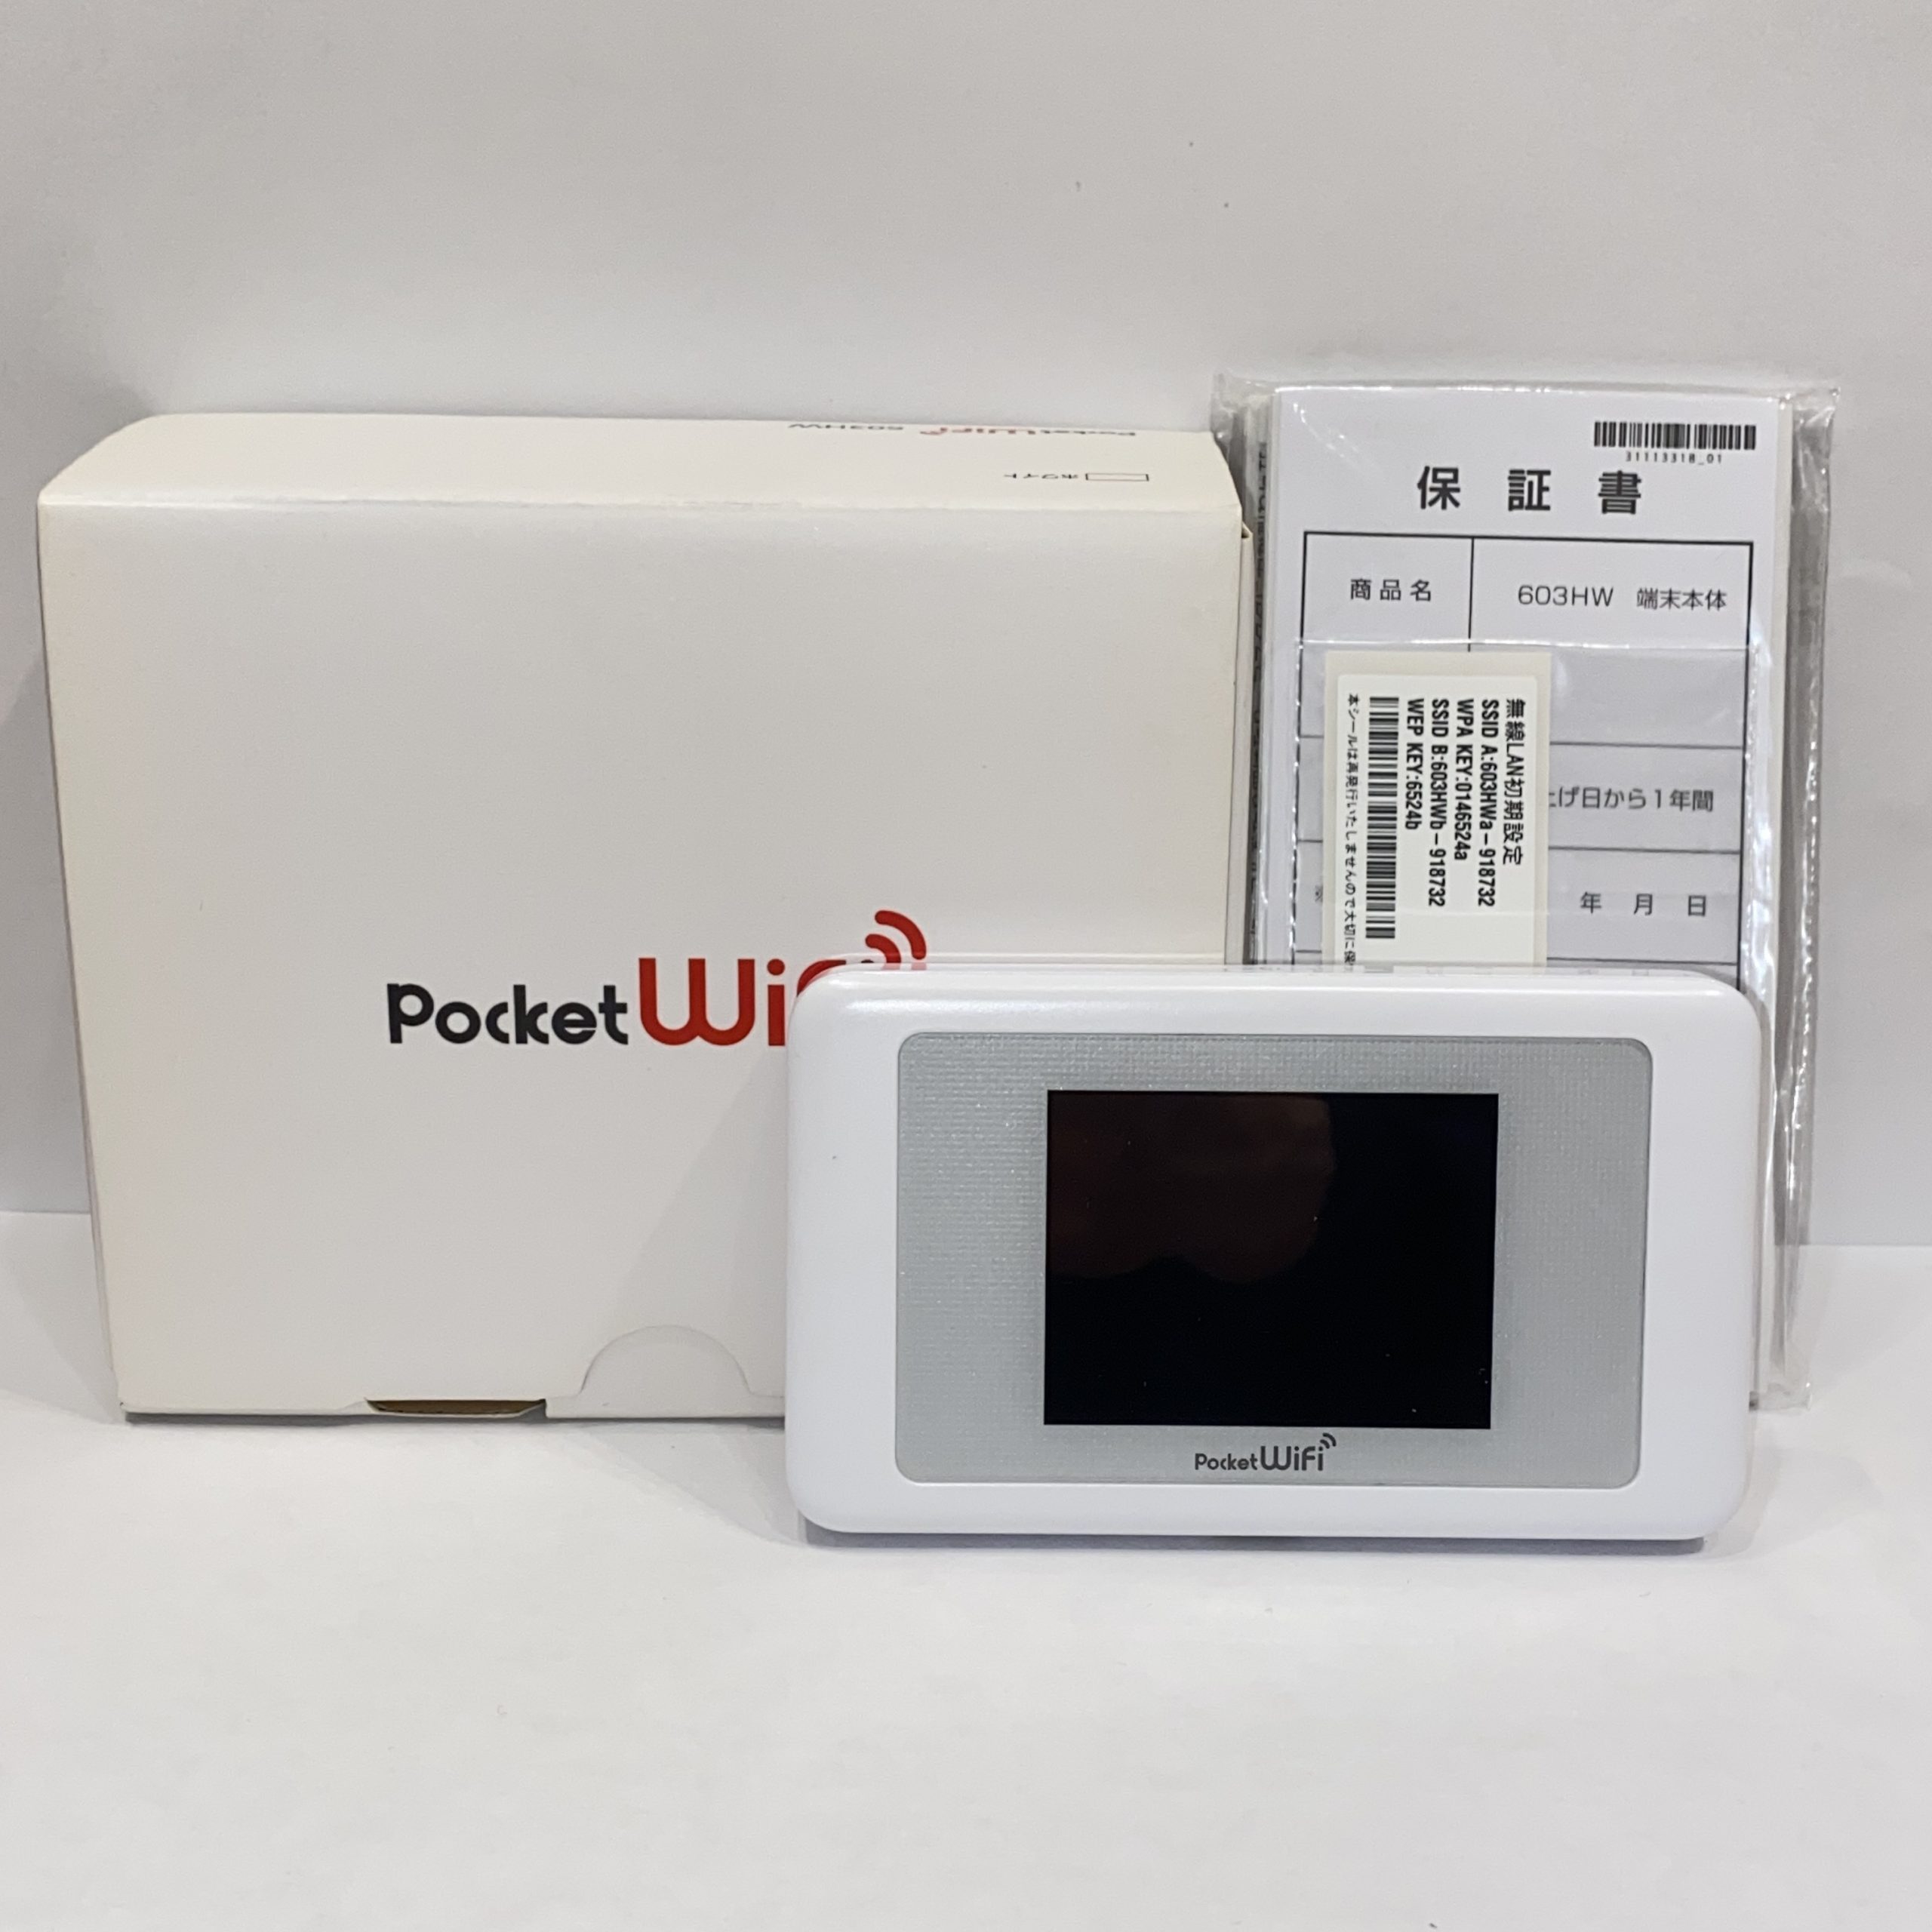 PocketWi-Fi/ポケットワイファイ 603HW ホワイト ソフトバンク